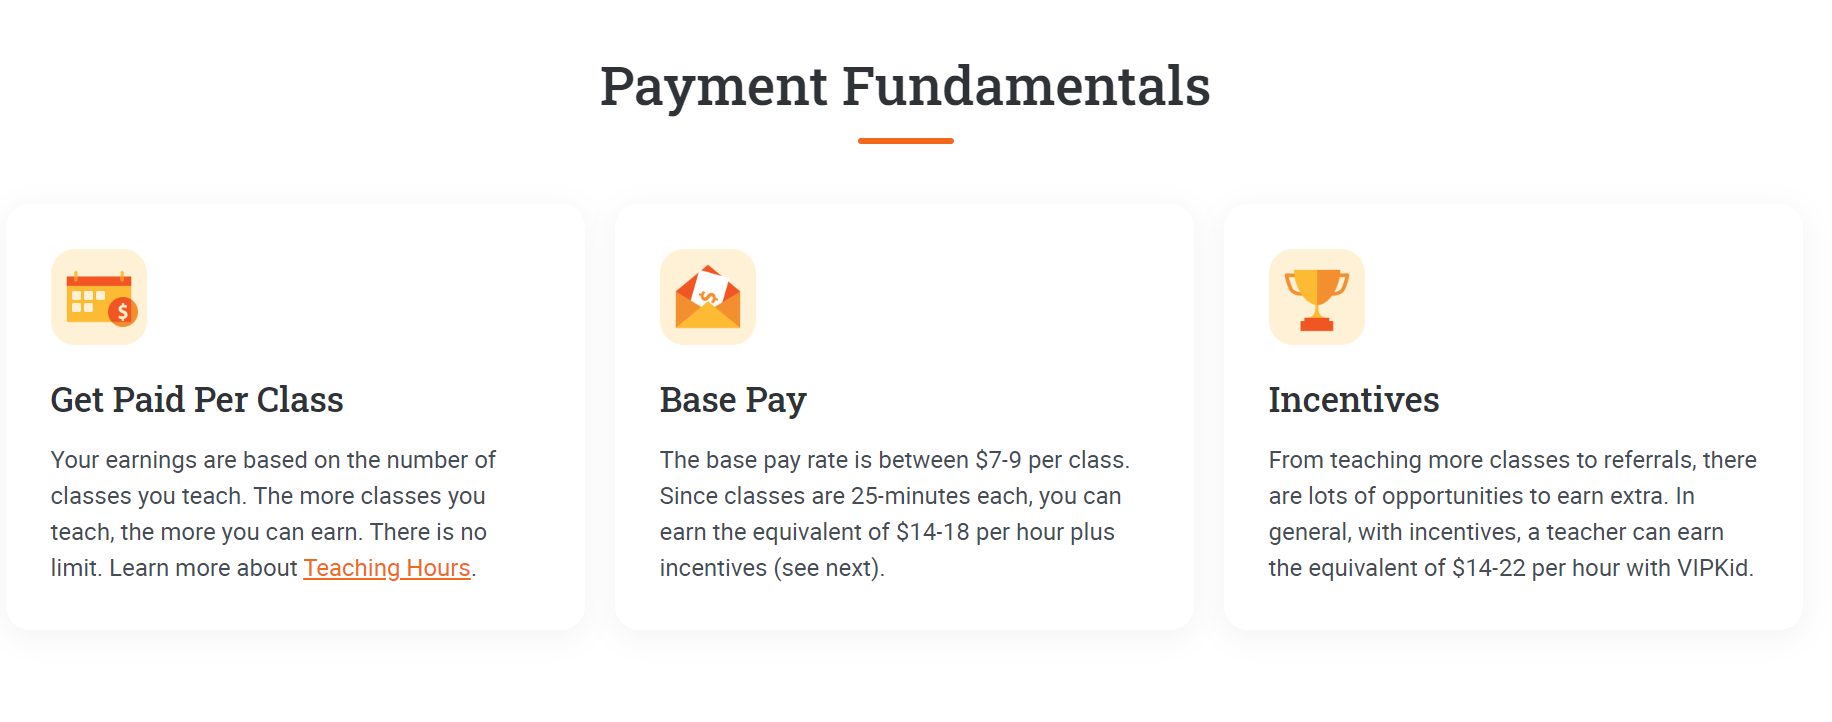 Payments fundamentals